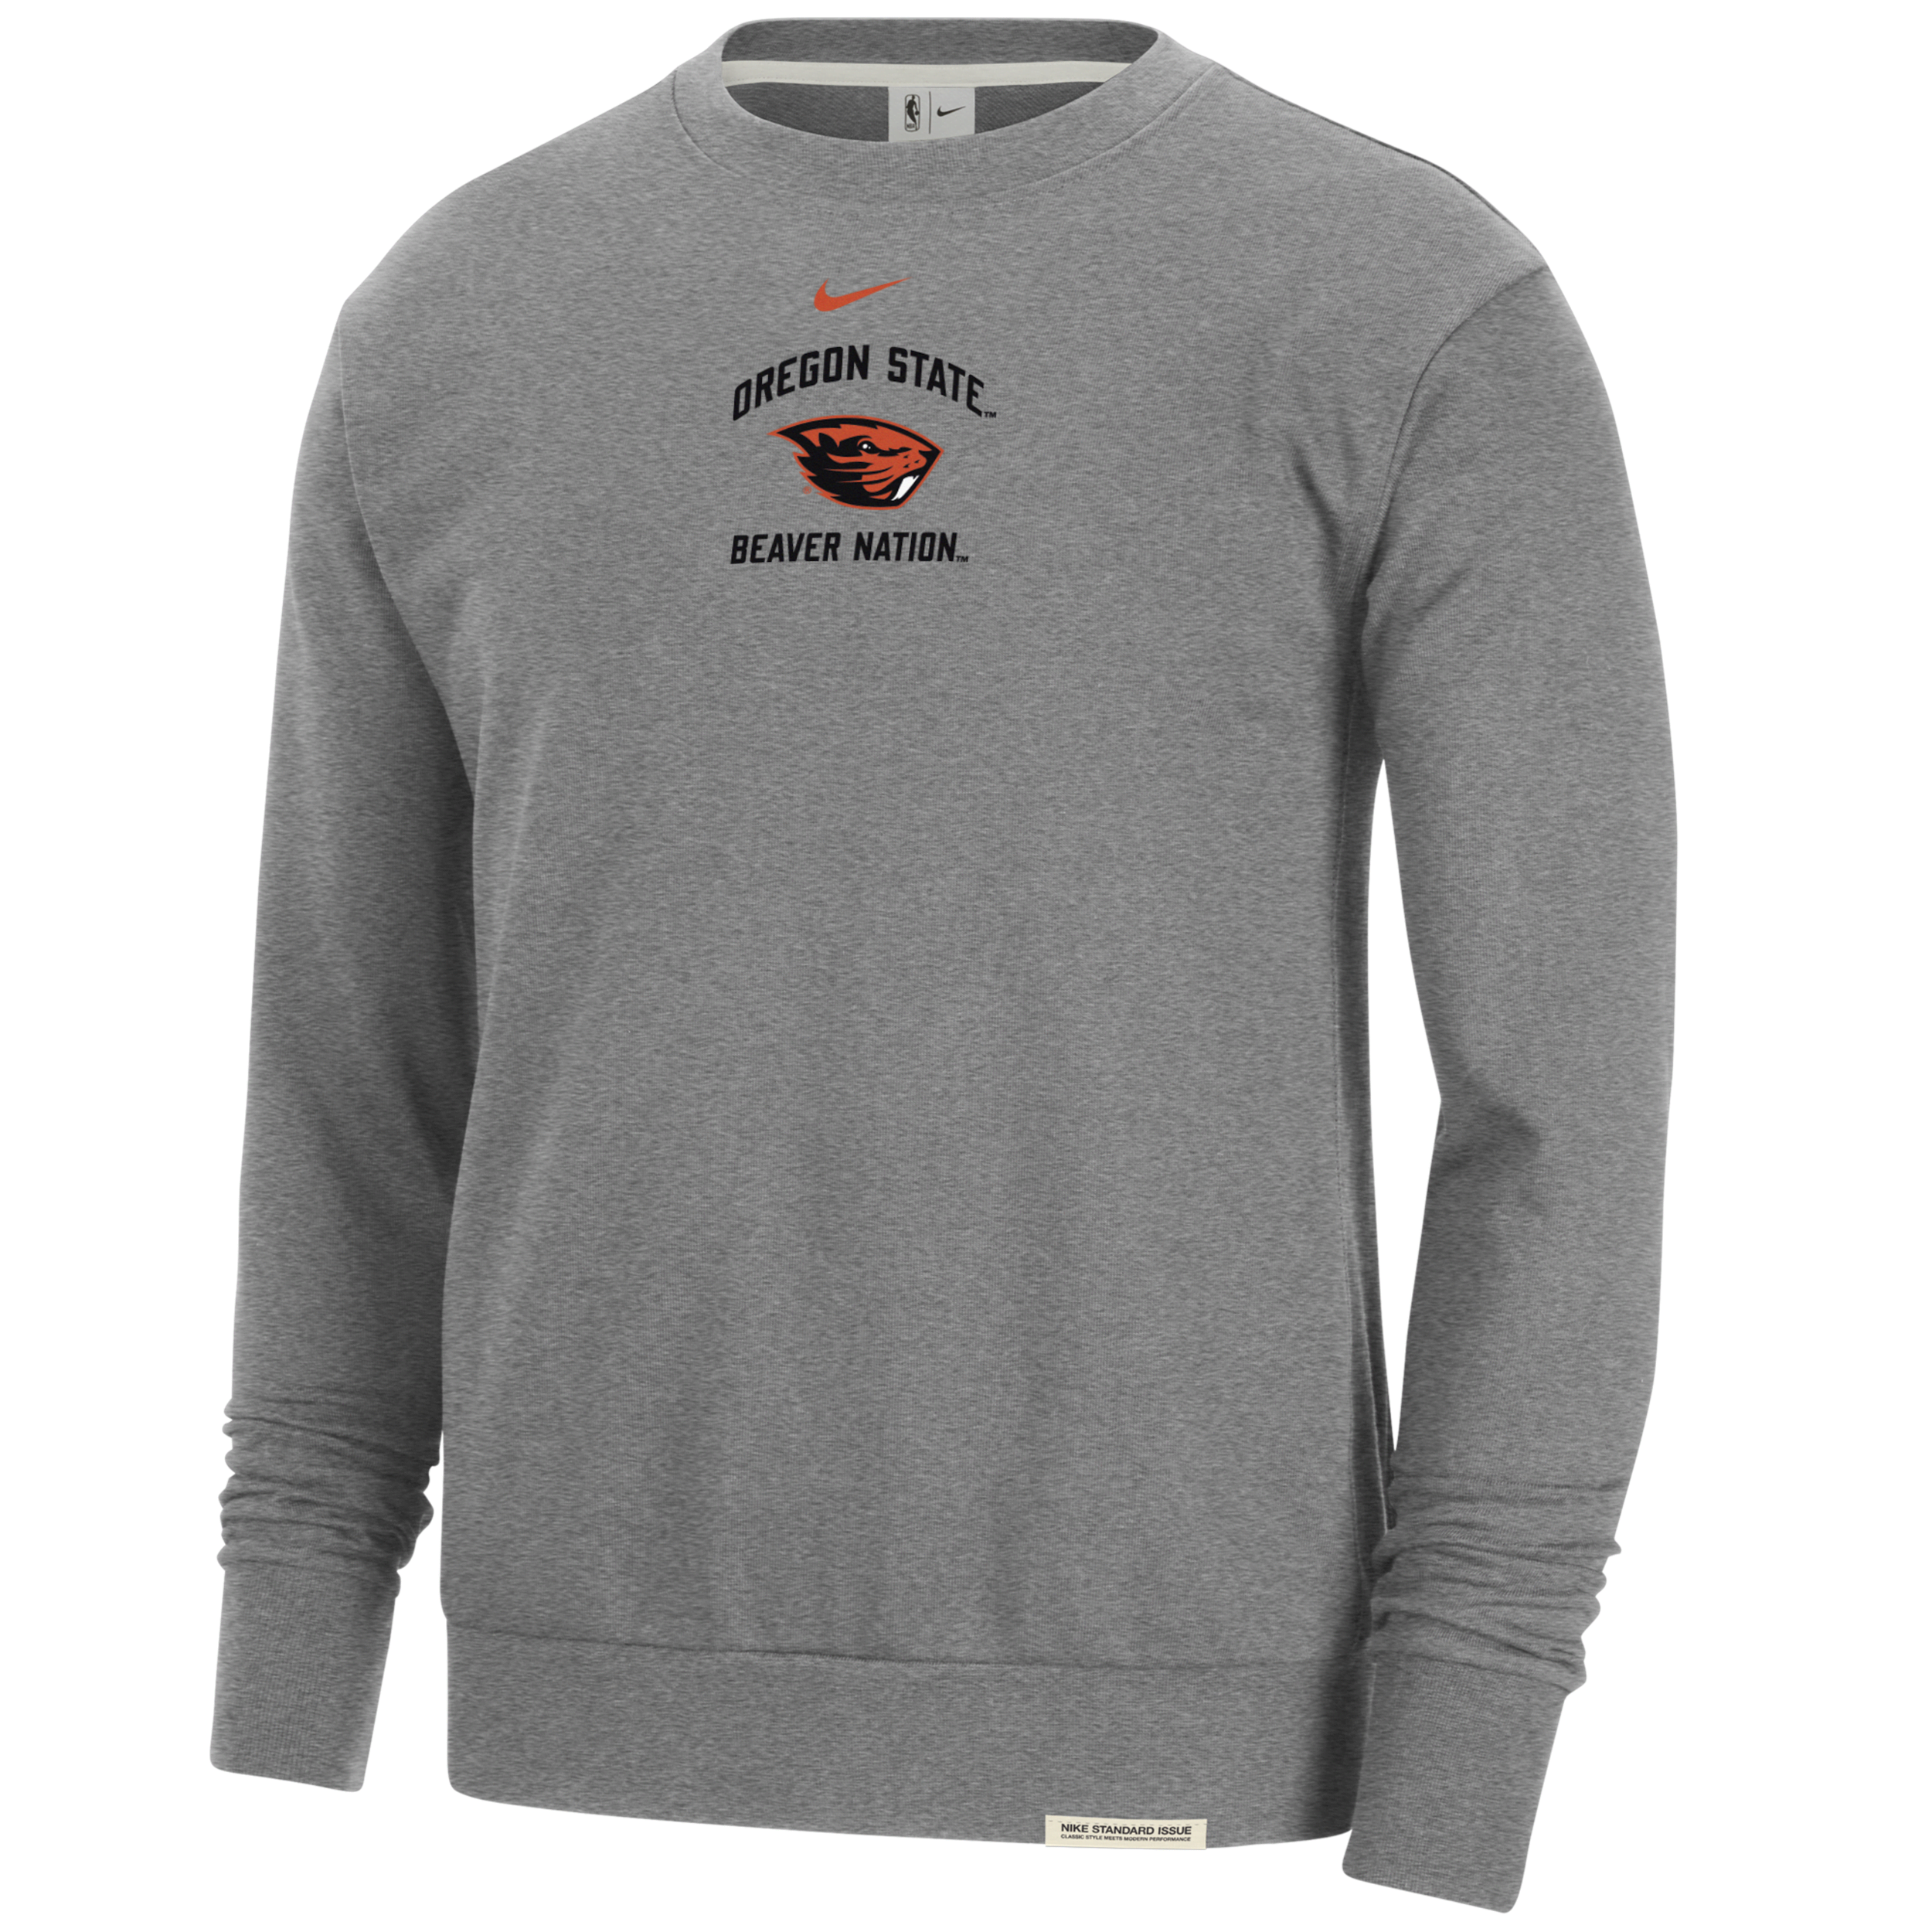 Nike Oregon State Standard Issue  Men's College Fleece Crew-neck Sweatshirt In Grey